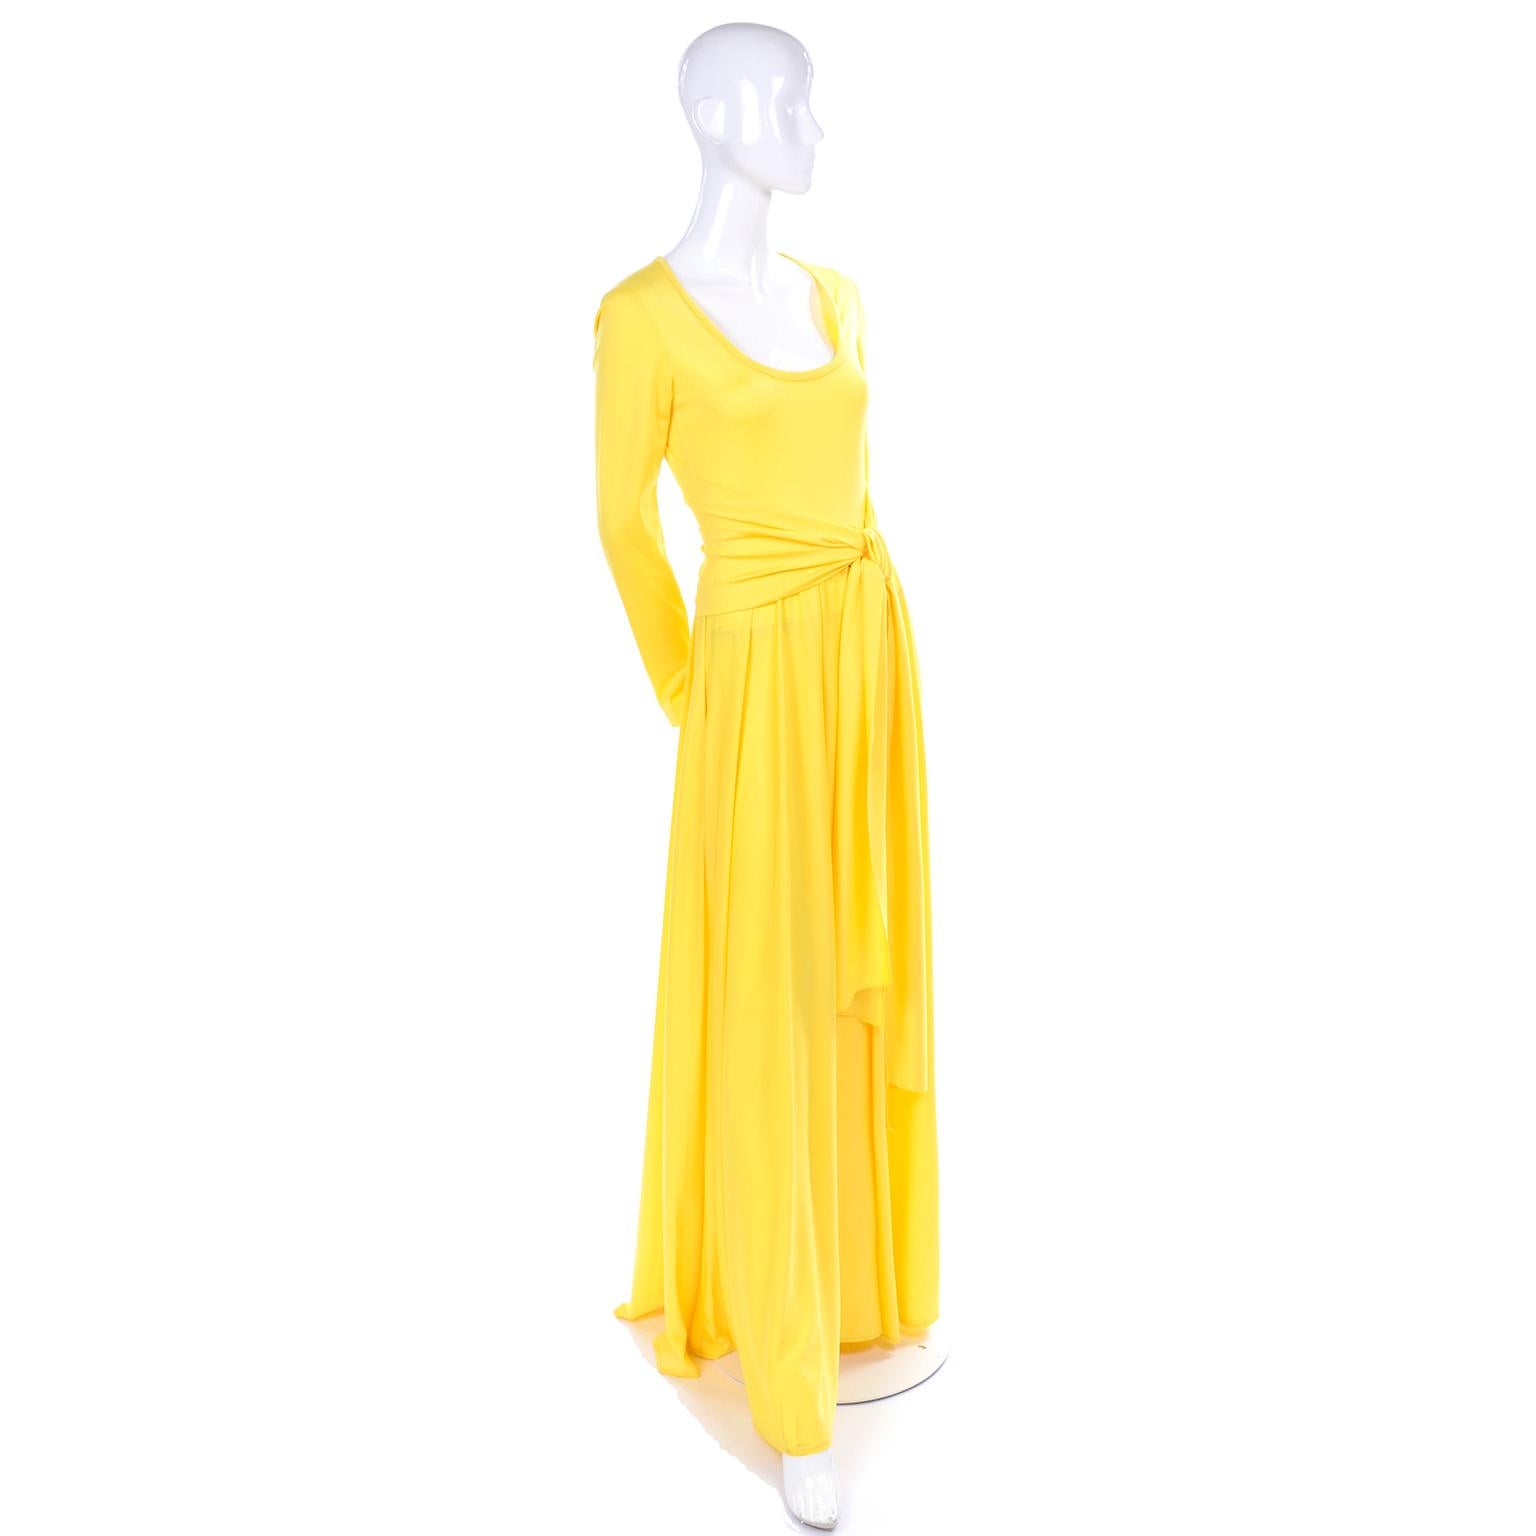 Il s'agit d'une belle robe longue vintage jaune ensoleillée des années 1970 de Lillie Rubin. Cette amusante robe en jersey est dotée d'une fermeture éclair à glissière et se ferme à l'arrière par une fermeture éclair. Le corsage est ajusté, avec un